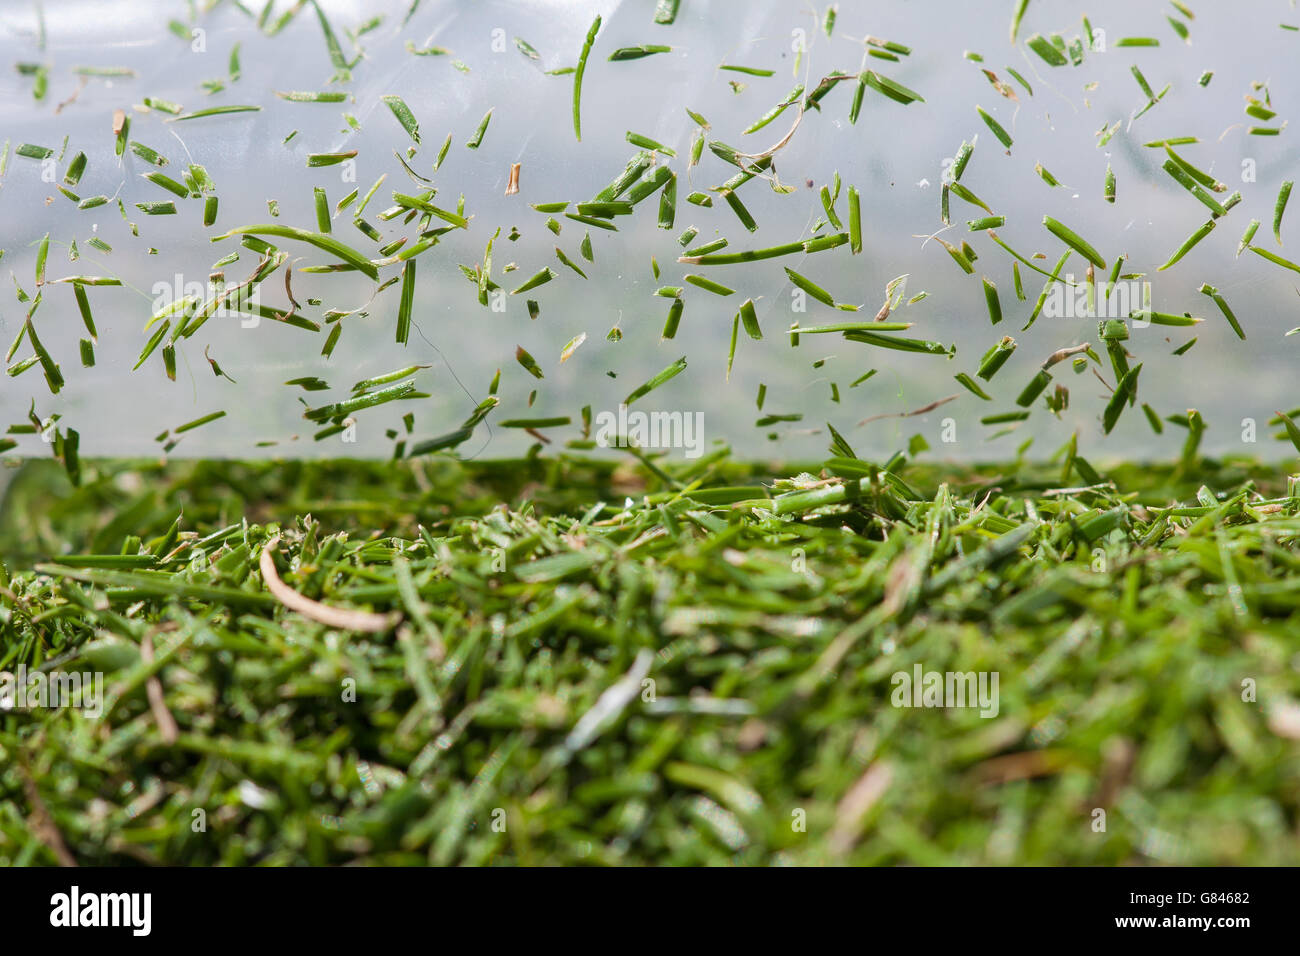 Nahaufnahme Makrolinsenfoto zeigt Grasschnitt in einer Plastiktüte während des vierten Tages der Wimbledon Championships beim All England Lawn Tennis und Croquet Club, Wimbledon. Stockfoto